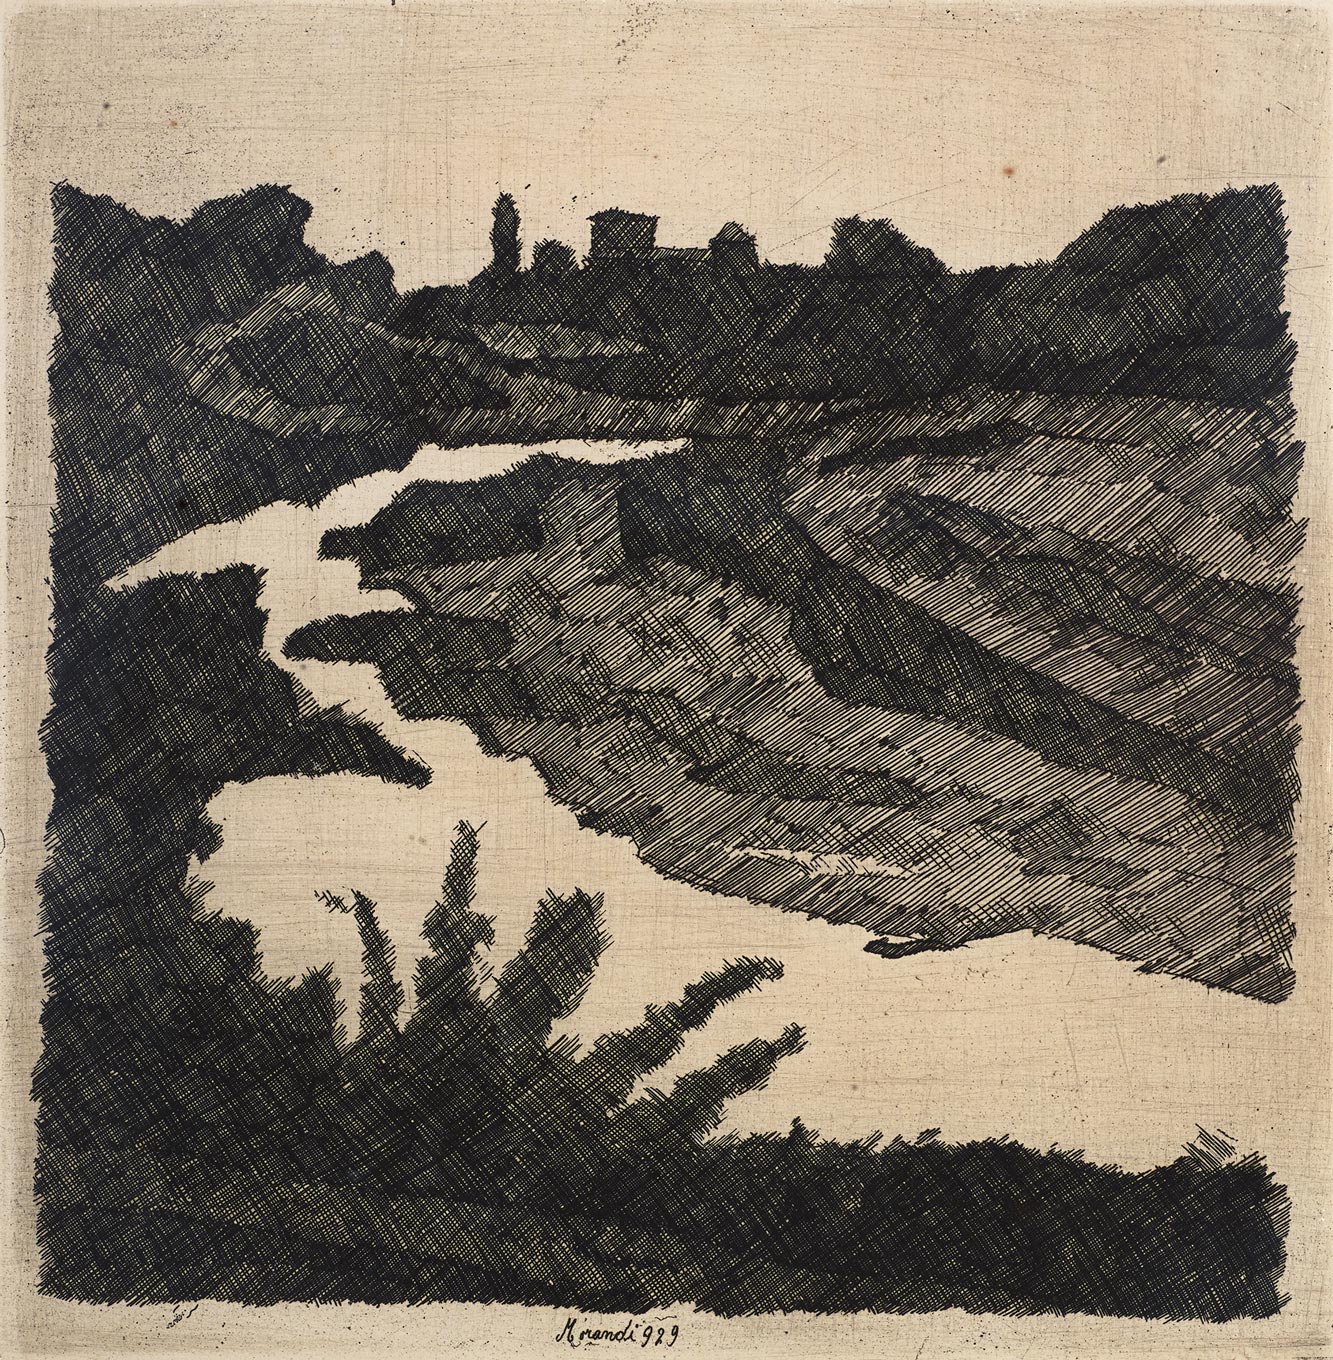 Giorgio Morandi, Savena Landscape, 1929